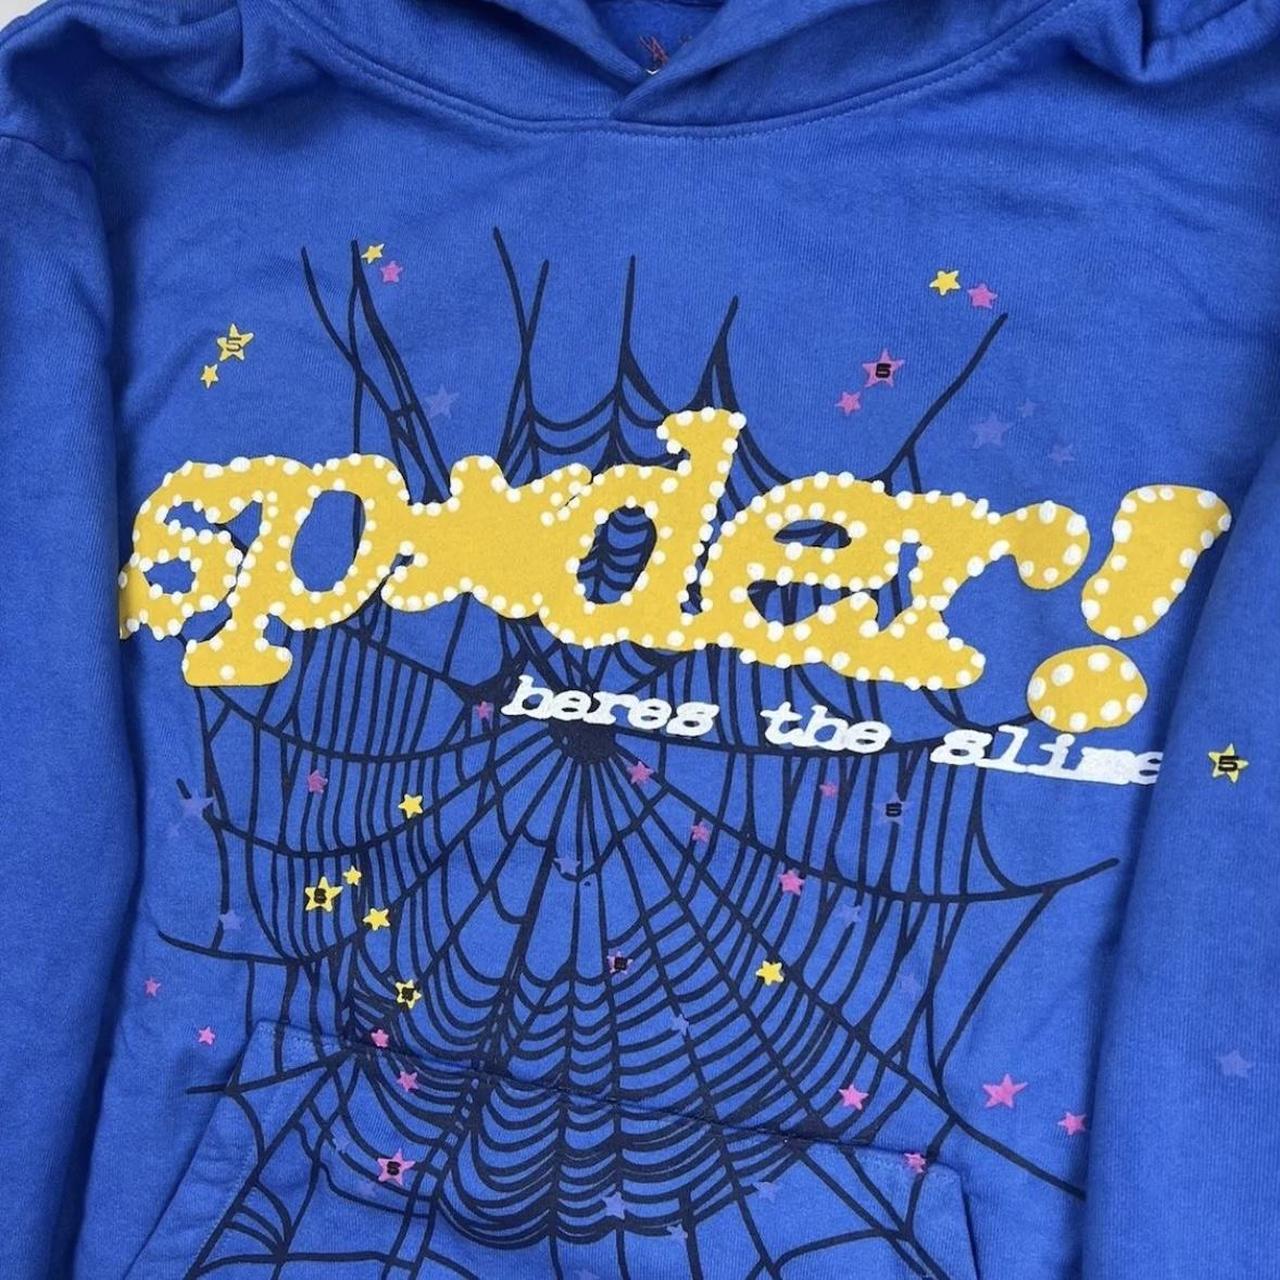 spider worldwide hoodie 100% authentic spider - Depop